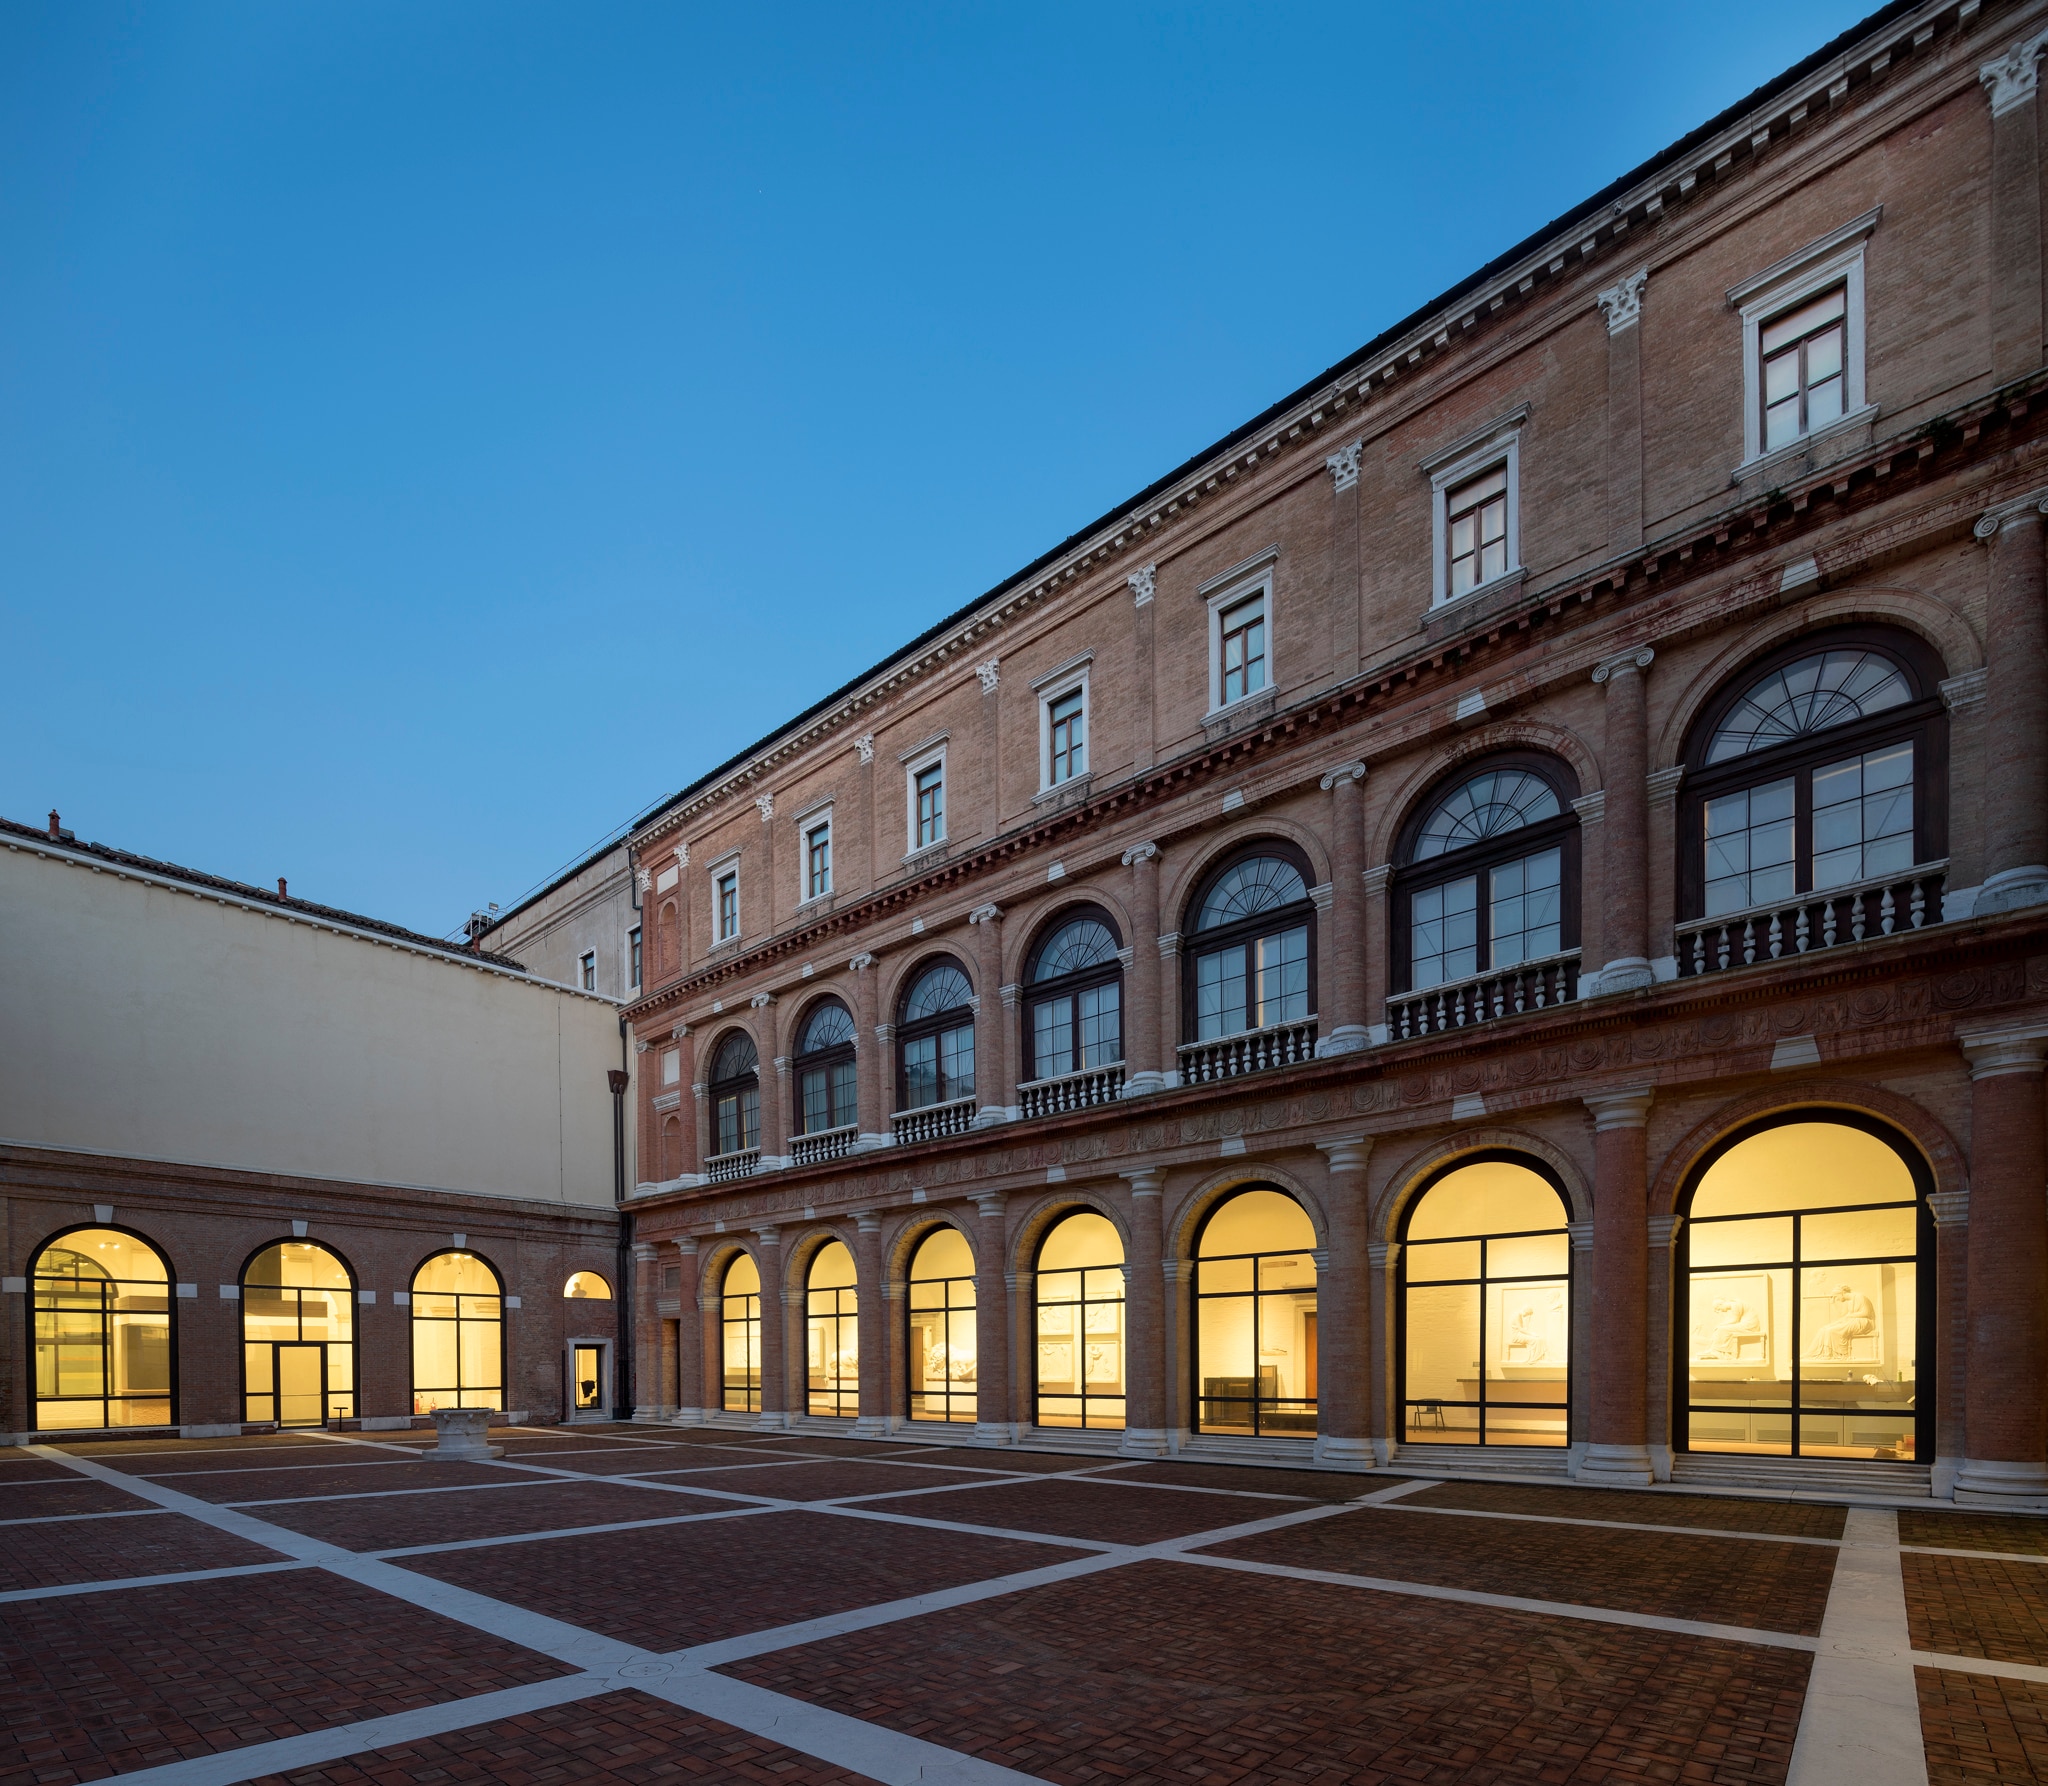 Gallerie dell’Accademia di Venezia: Facciata convento palladiano e cortile interno 